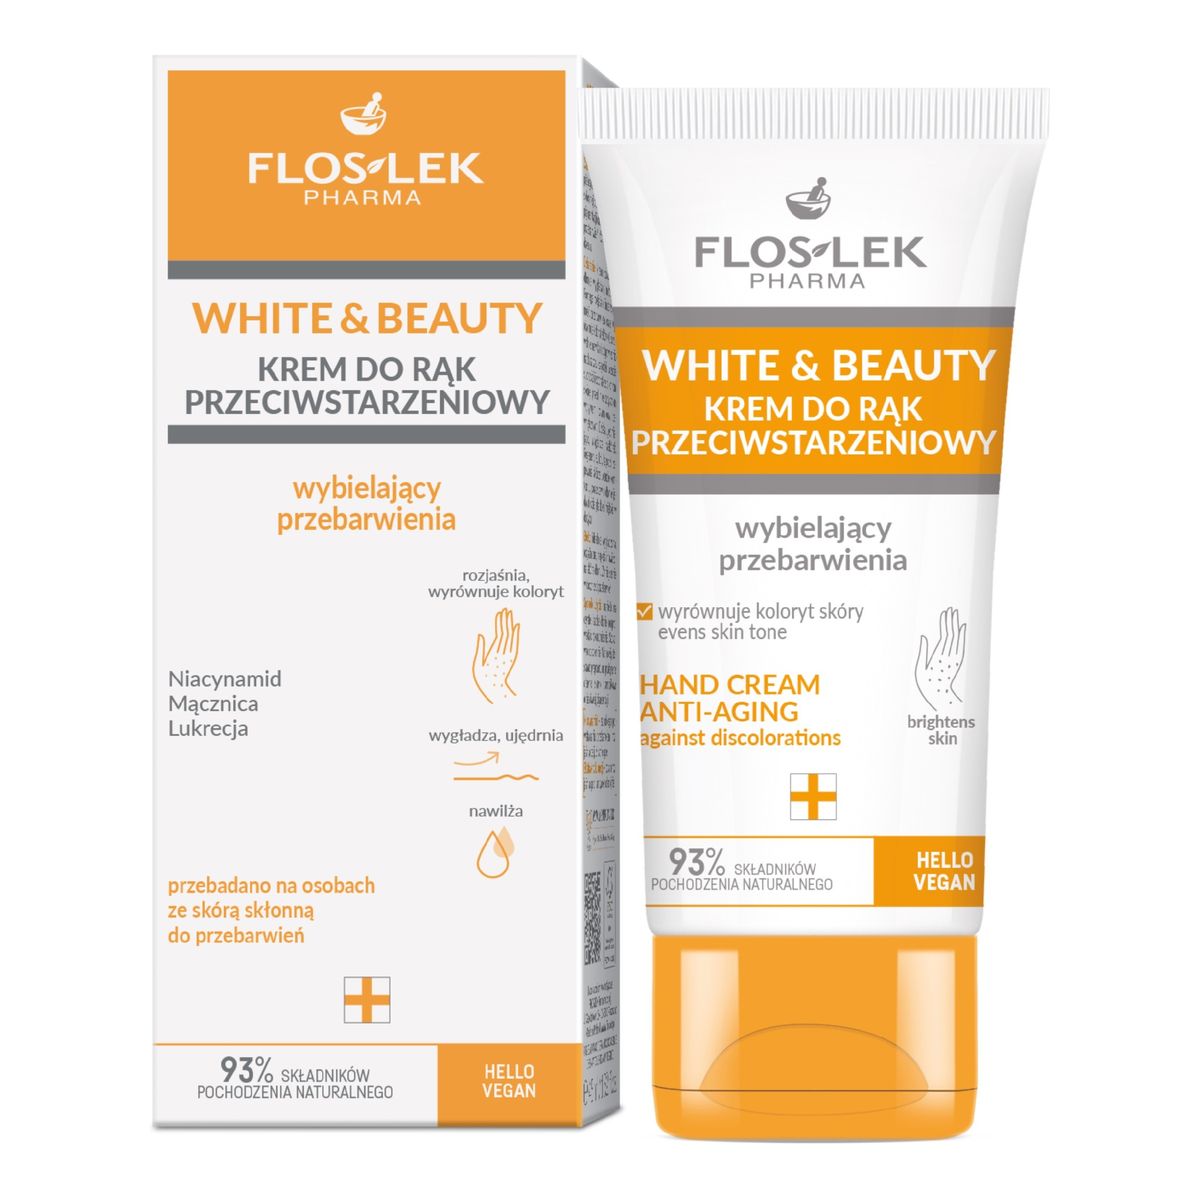 FlosLek PHARMA White & Beauty Krem do rąk przeciwstarzeniowy-wybielający przebarwienia 45ml